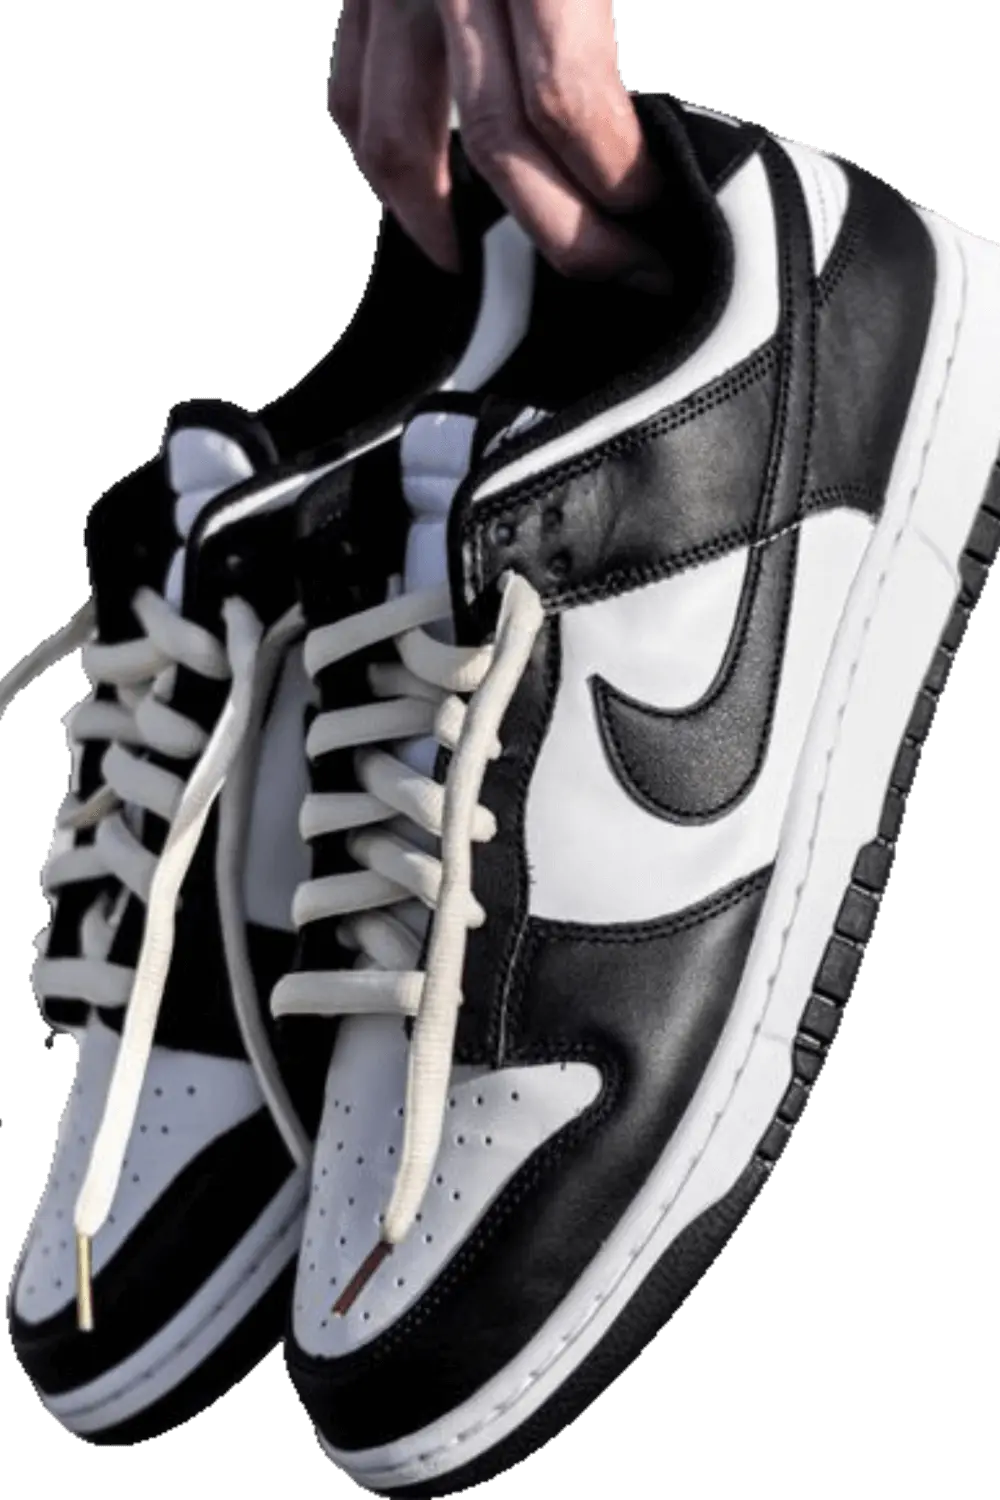 Une paire de Nike Dunk Black tenue par une main sur un fond transparent.